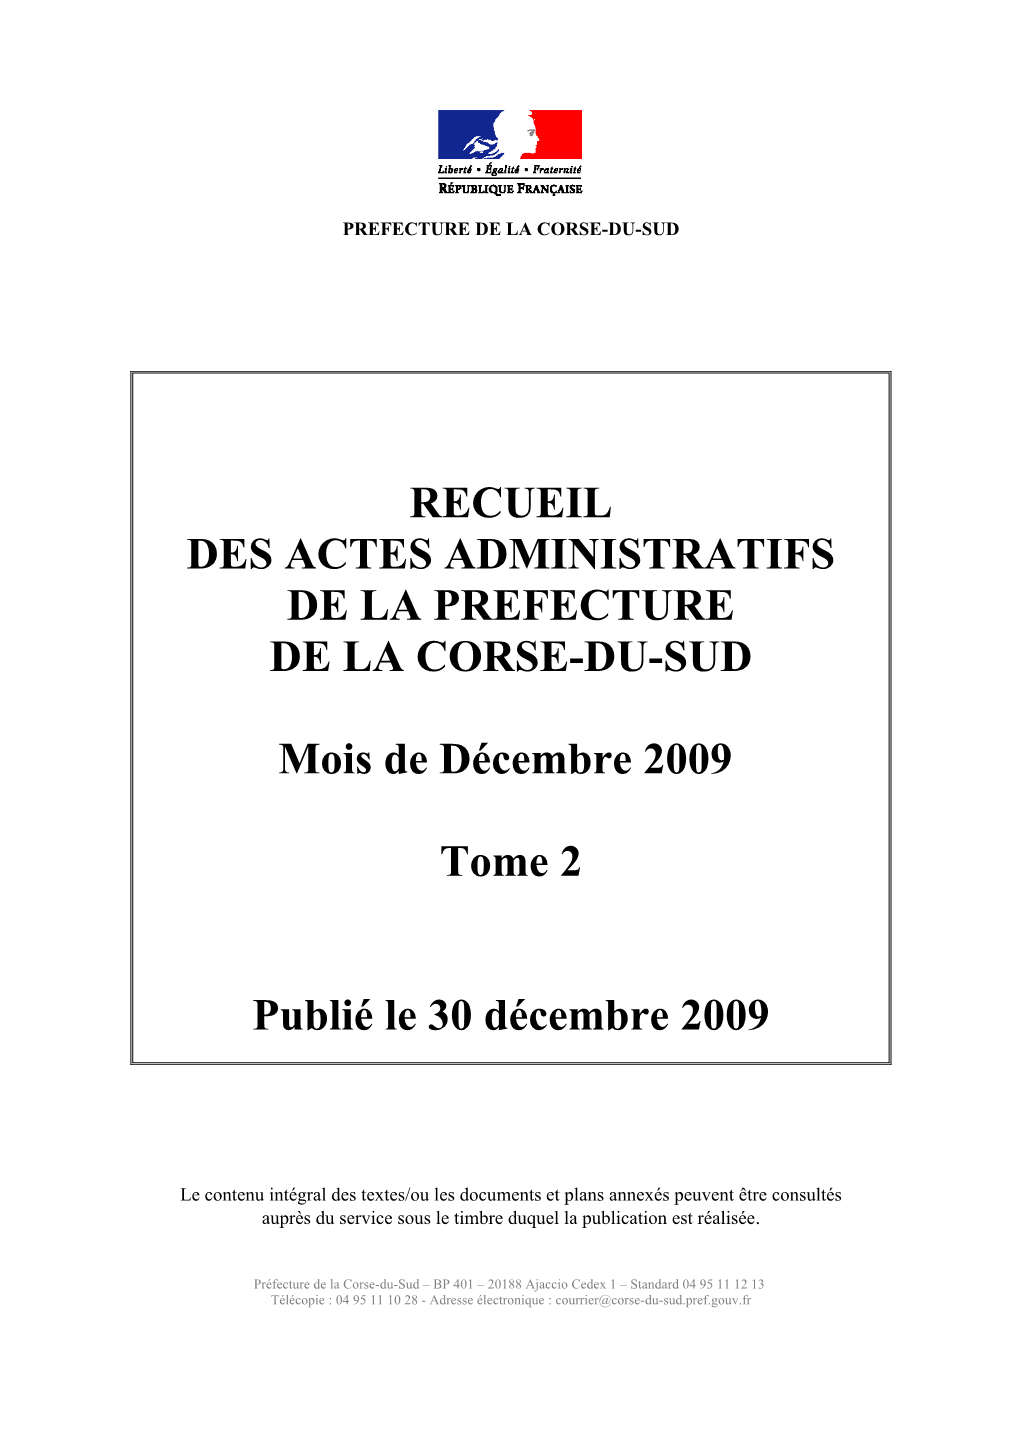 RECUEIL DES ACTES ADMINISTRATIFS DE LA PREFECTURE DE LA CORSE-DU-SUD Mois De Décembre 2009 Tome 2 Publié Le 30 Décembre 2009